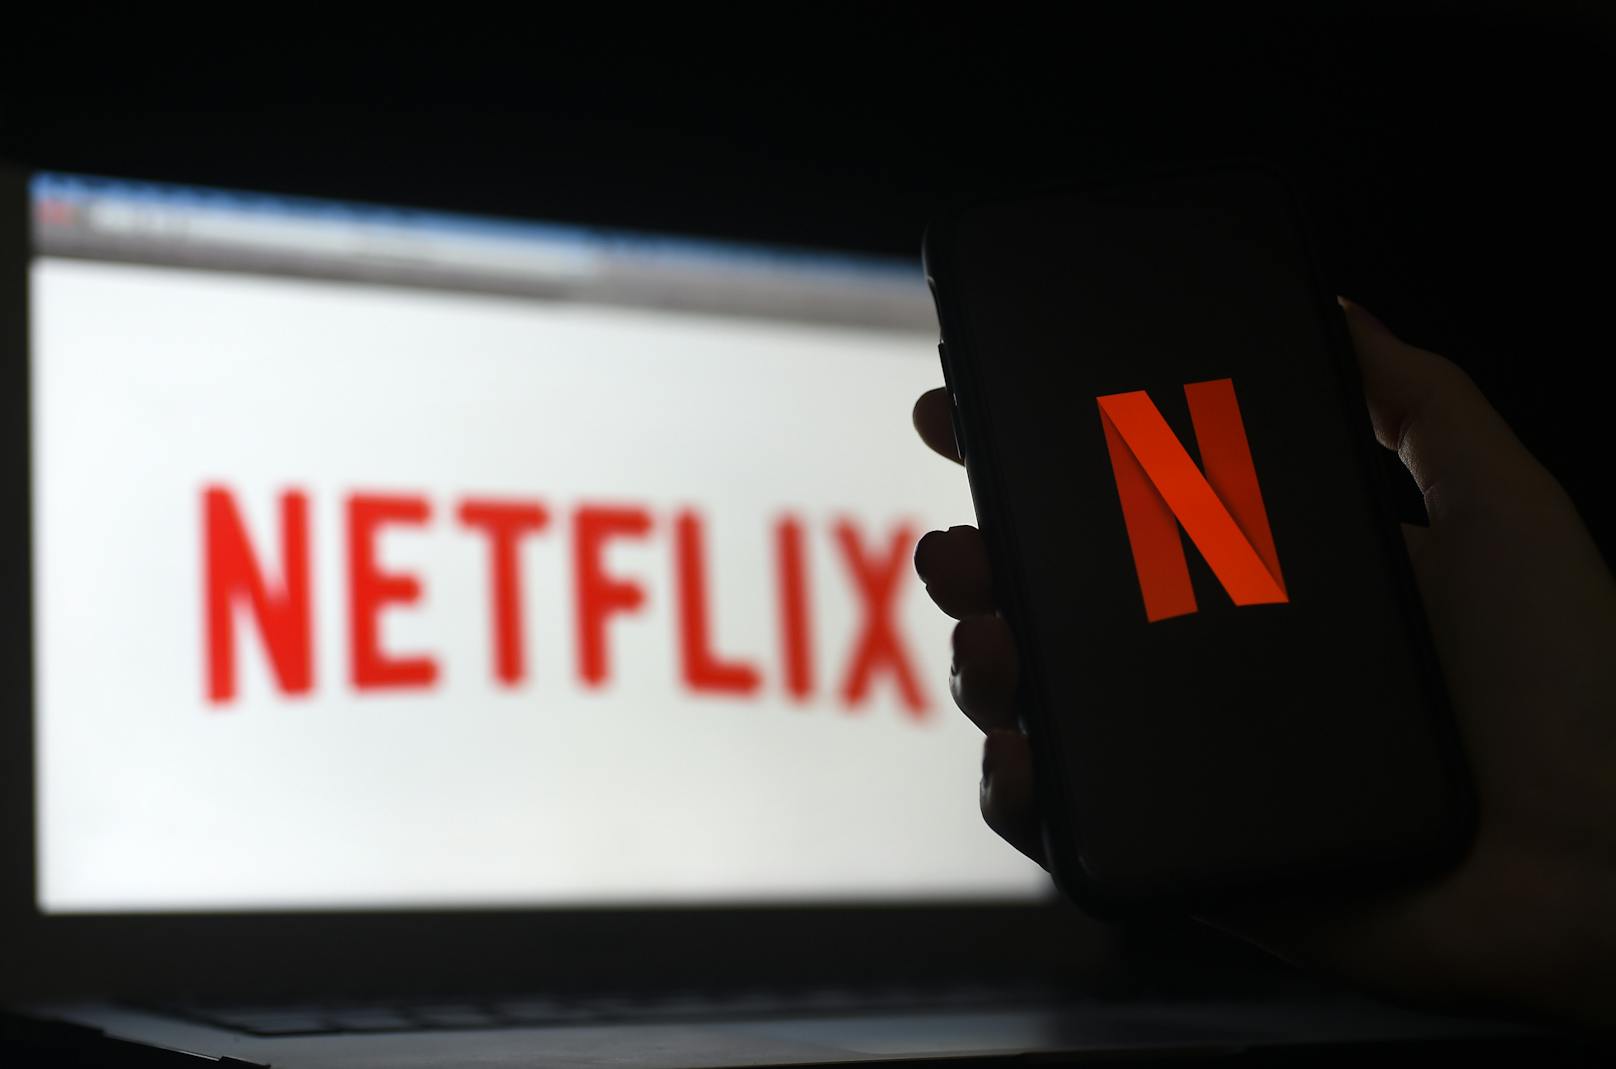 Mit dem neuen Sender könnten sich die Nutzer laut Netflix zurücklehnen ohne sich für eine Sendung entscheiden zu müssen.